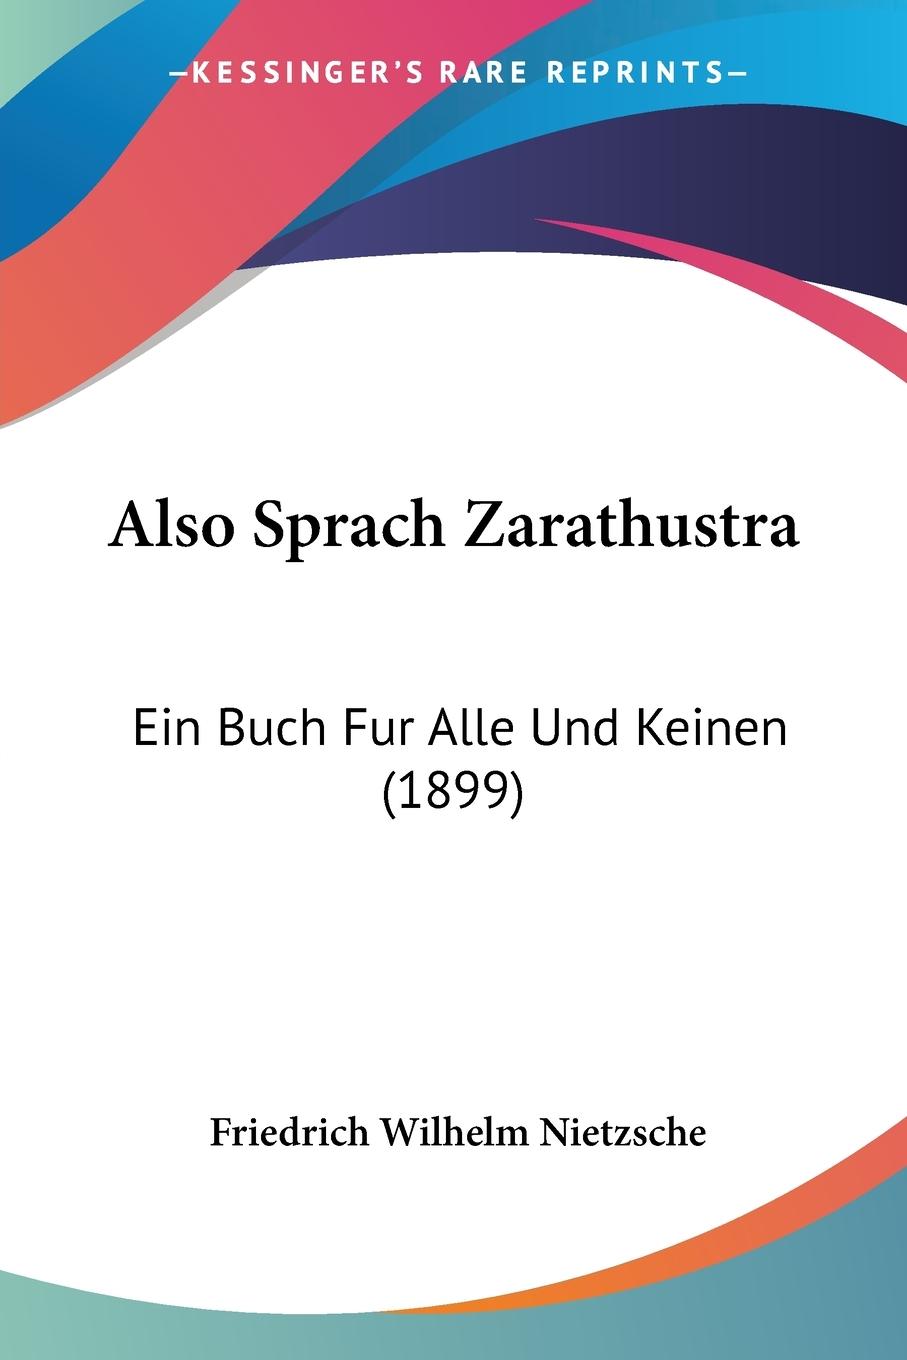 Also Sprach Zarathustra - Nietzsche, Friedrich Wilhelm